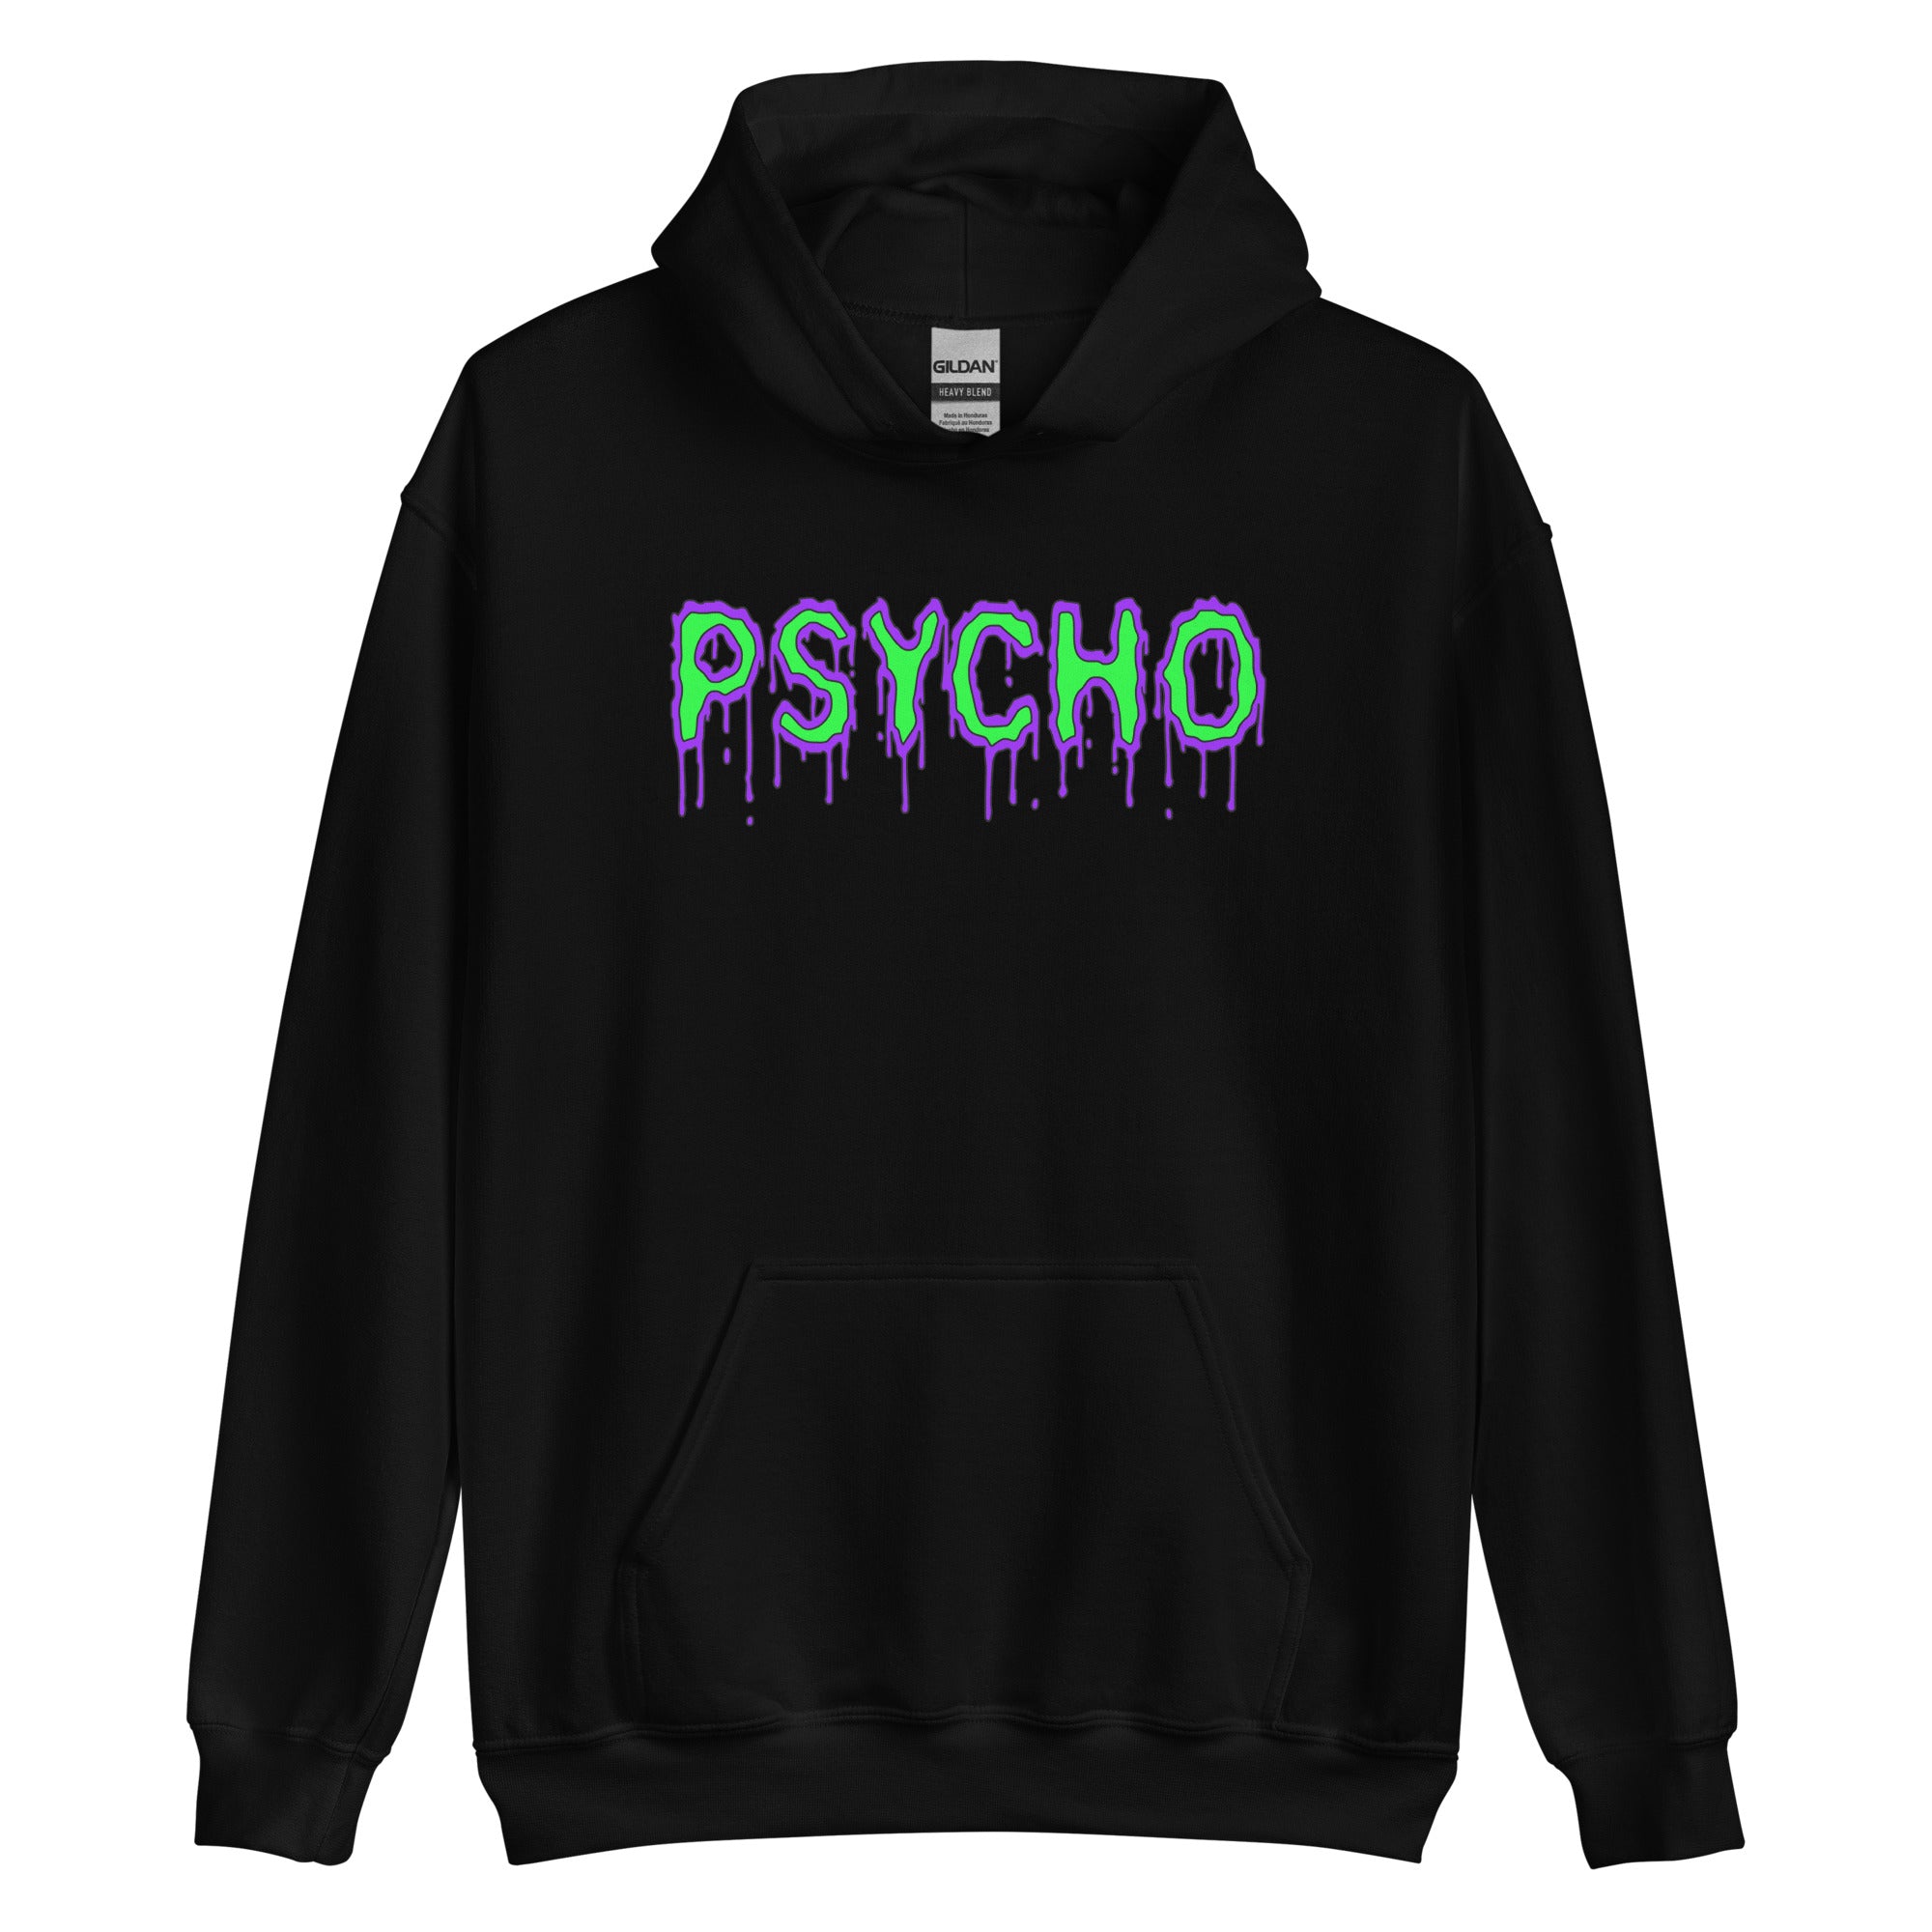 Psycho Mental Personality Unisex Hoodie Sweatshirt